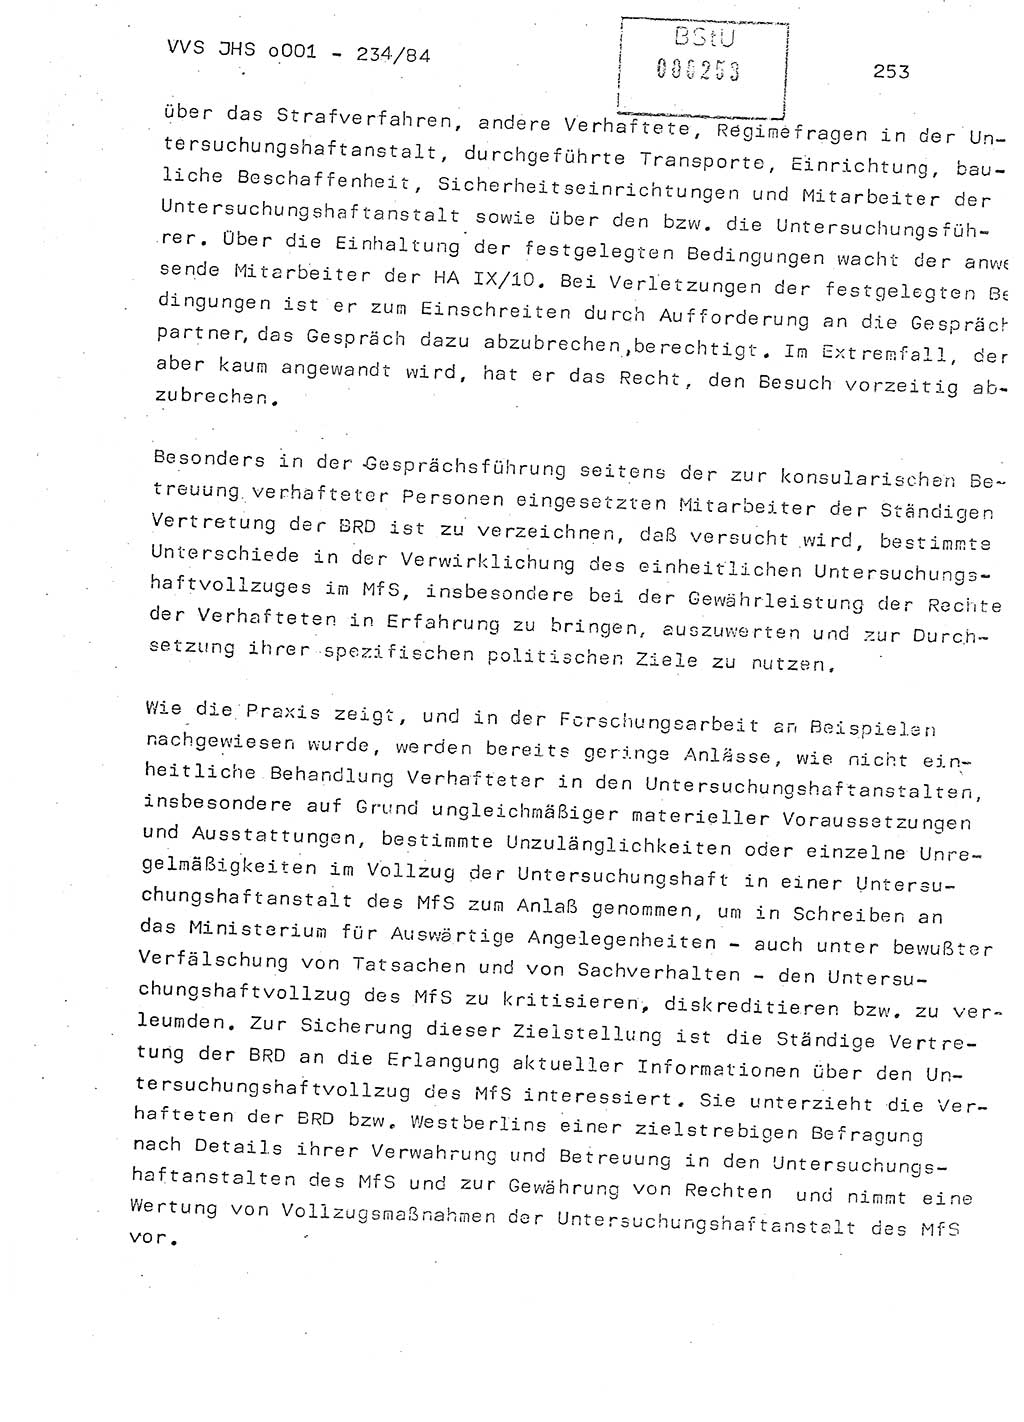 Dissertation Oberst Siegfried Rataizick (Abt. ⅩⅣ), Oberstleutnant Volkmar Heinz (Abt. ⅩⅣ), Oberstleutnant Werner Stein (HA Ⅸ), Hauptmann Heinz Conrad (JHS), Ministerium für Staatssicherheit (MfS) [Deutsche Demokratische Republik (DDR)], Juristische Hochschule (JHS), Vertrauliche Verschlußsache (VVS) o001-234/84, Potsdam 1984, Seite 253 (Diss. MfS DDR JHS VVS o001-234/84 1984, S. 253)